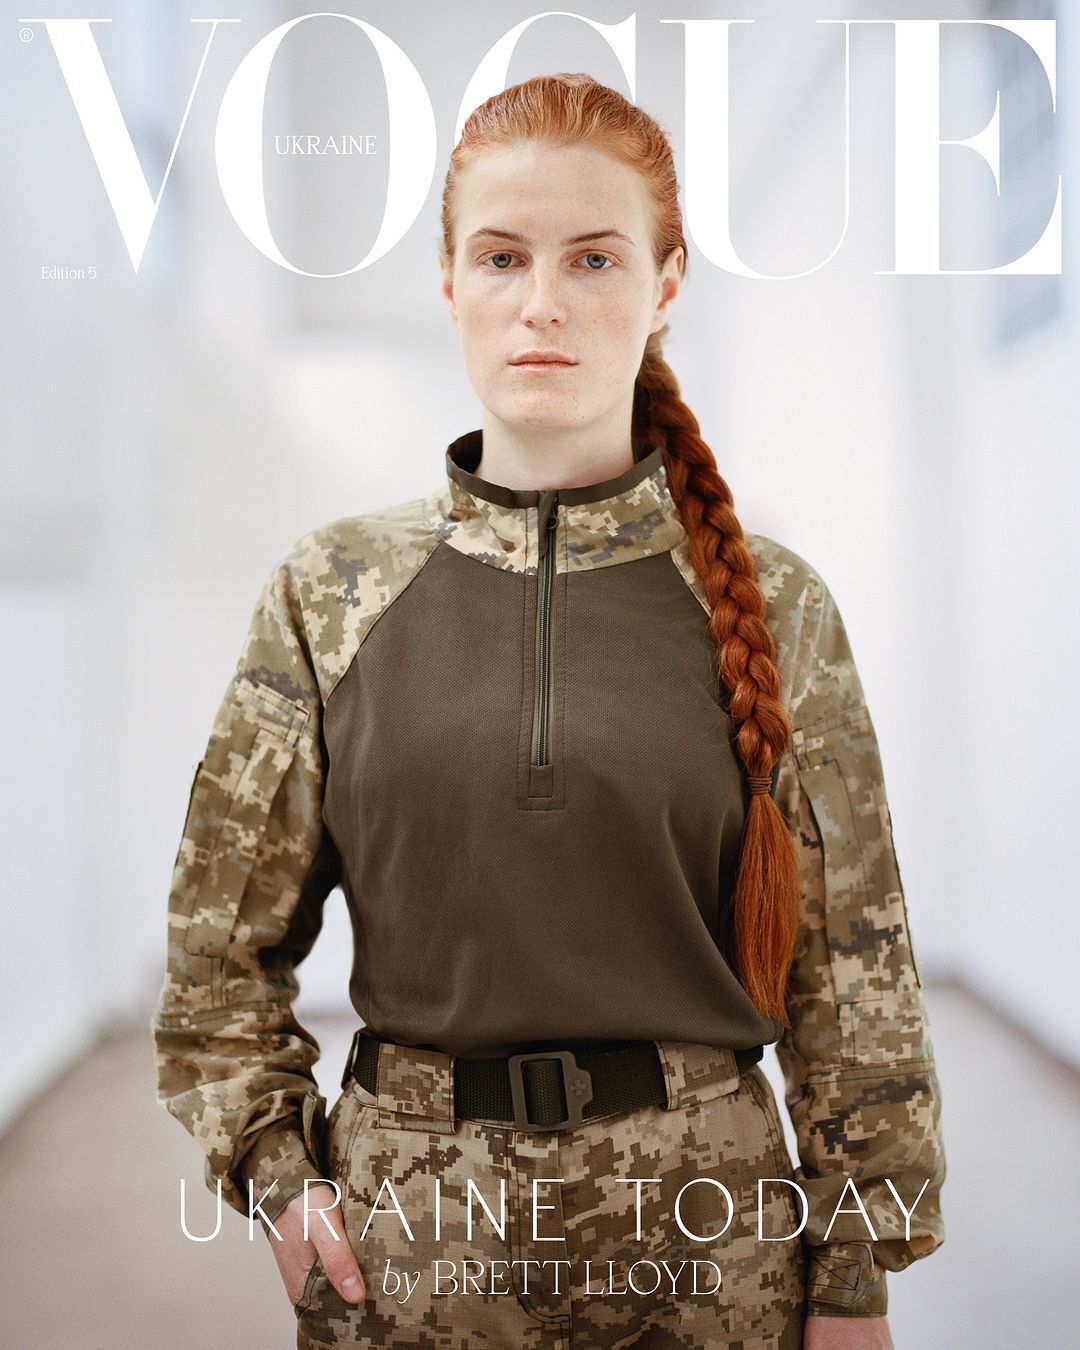 "Може, не будемо робити гламур із війни?" У мережі спалахнув скандал навколо обкладинки Vogue, де модель позує у військовій формі